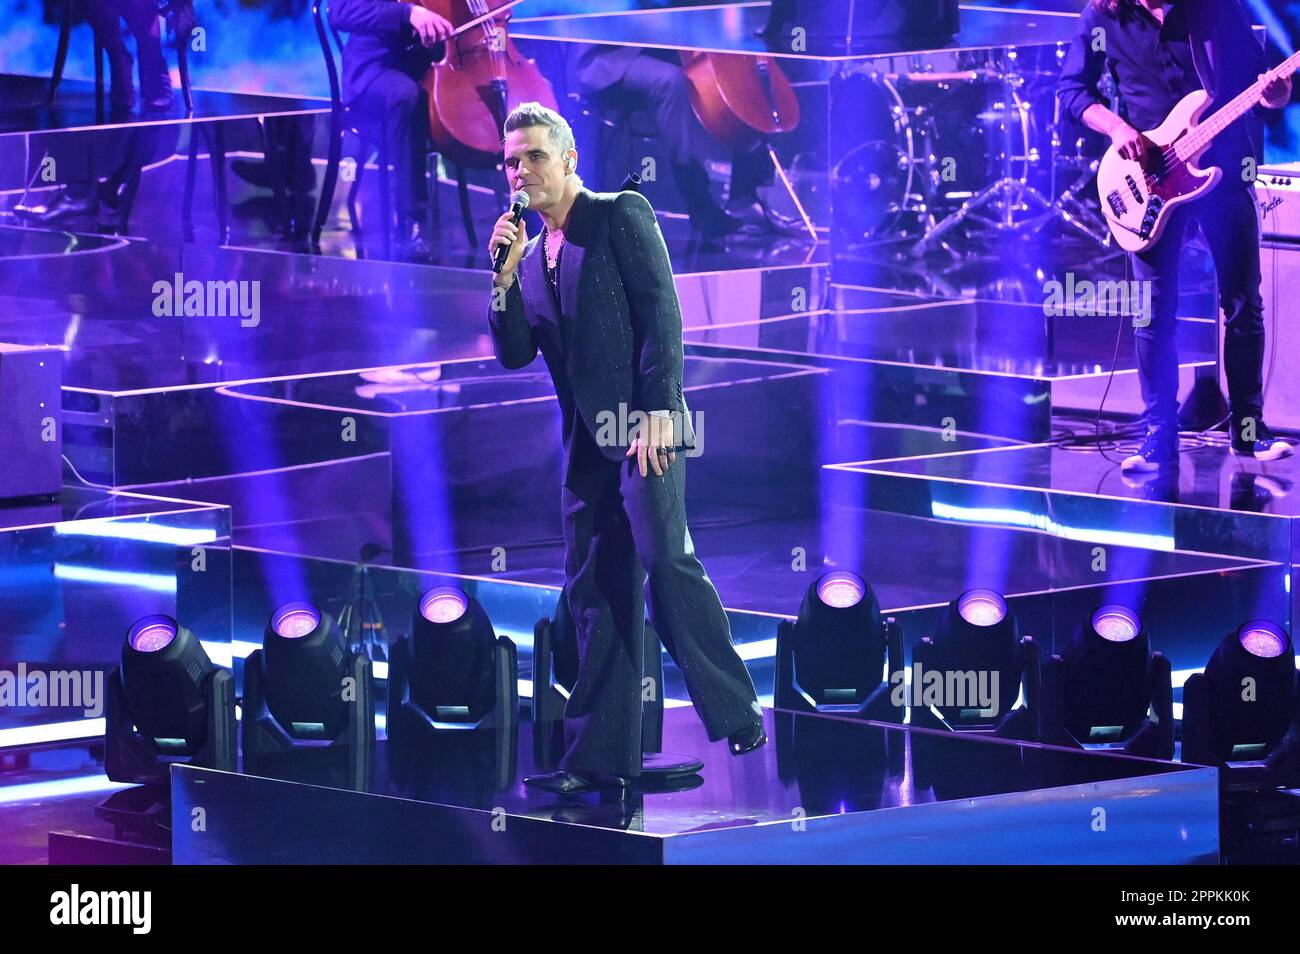 Robbie Williams,bet that..? from the exhibition halls,Friedrichshafen,19.11.2022 Stock Photo